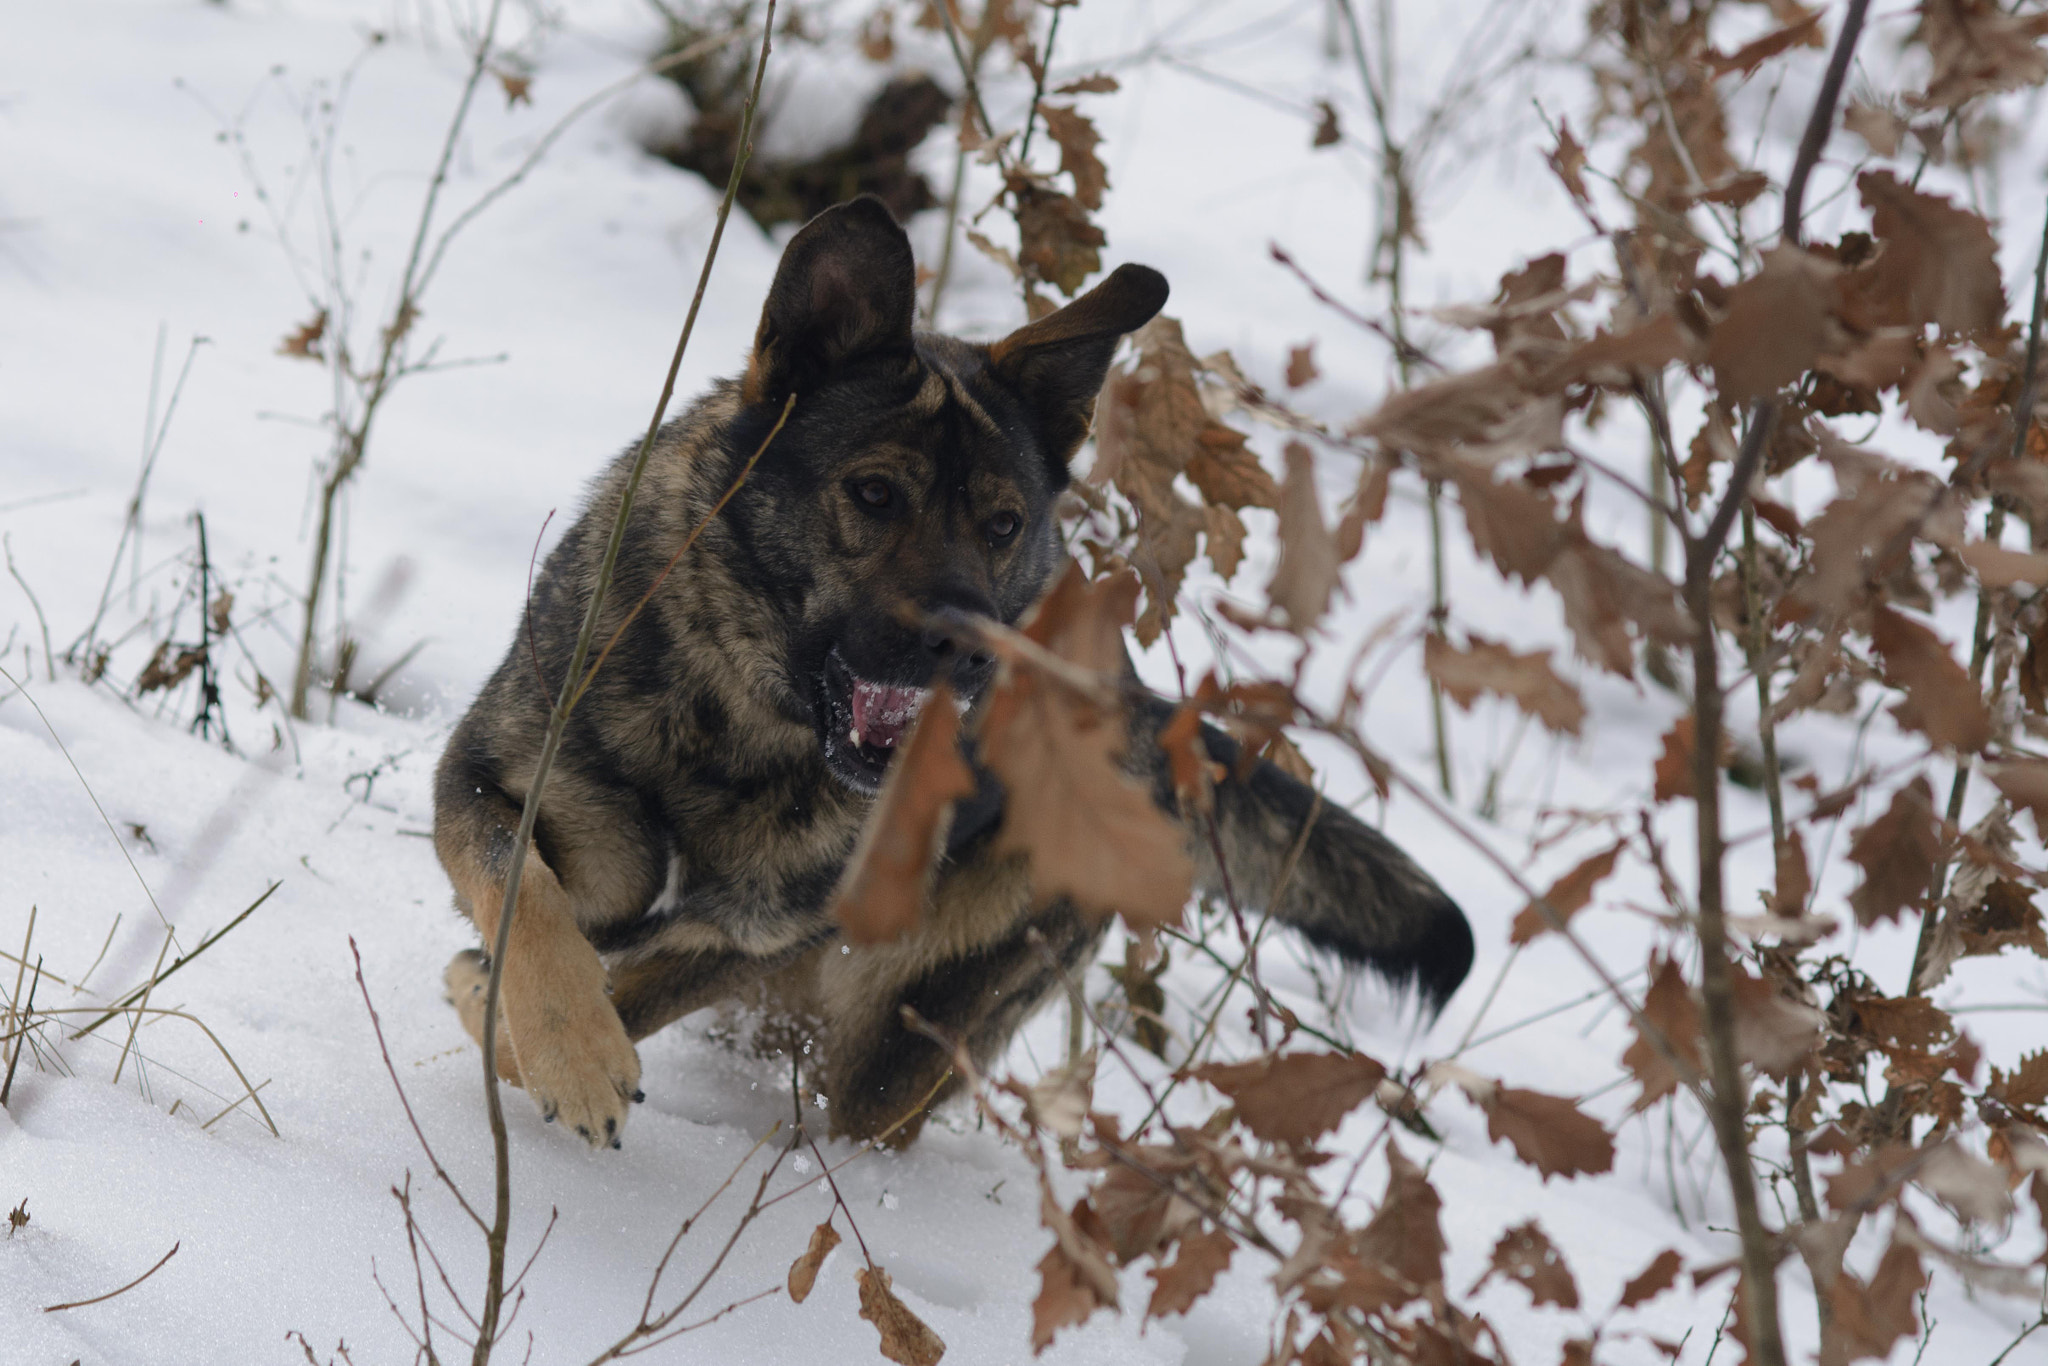 AF Nikkor 85mm f/1.8 sample photo. Dog snow play photography